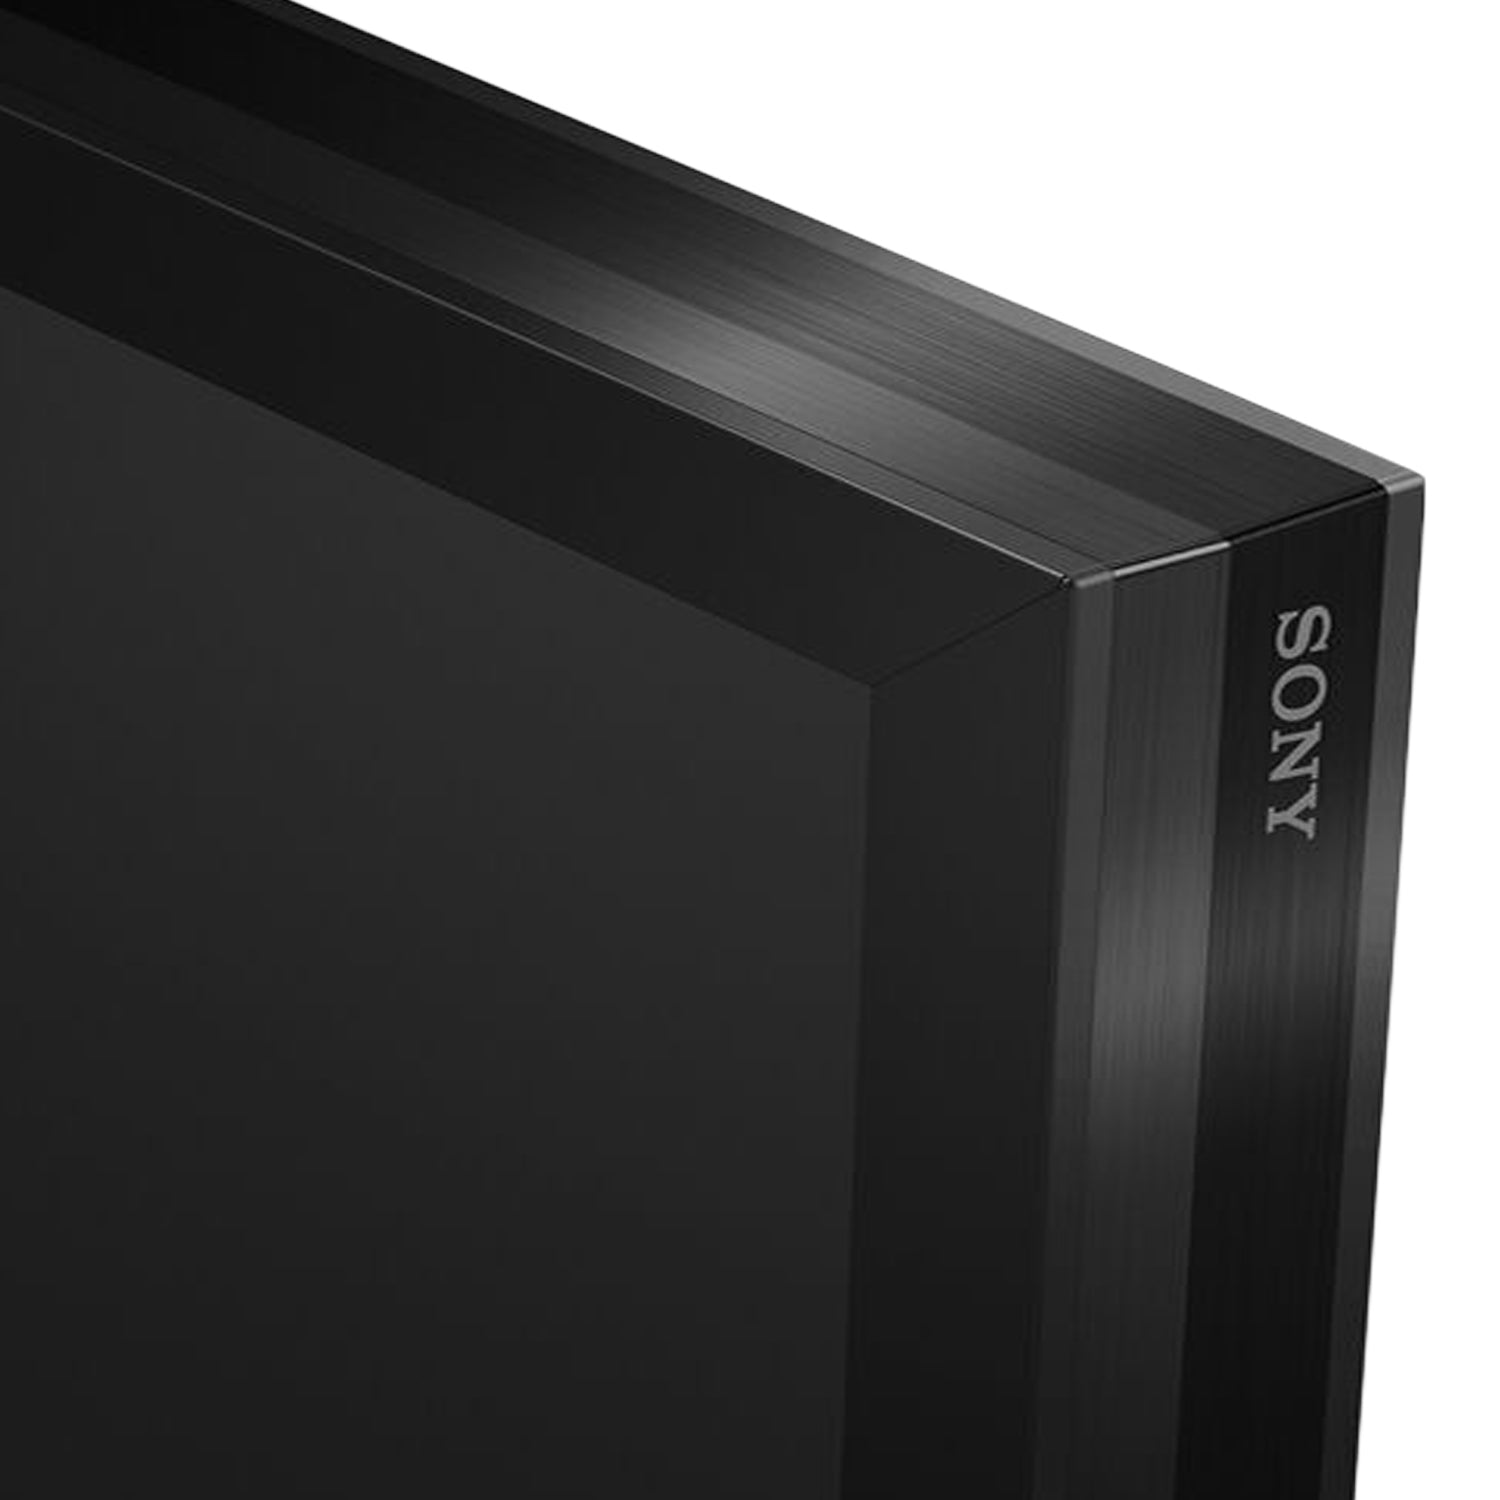 Sony FW-100BZ40J 100" BRAVIA 4K HDR Professional Display